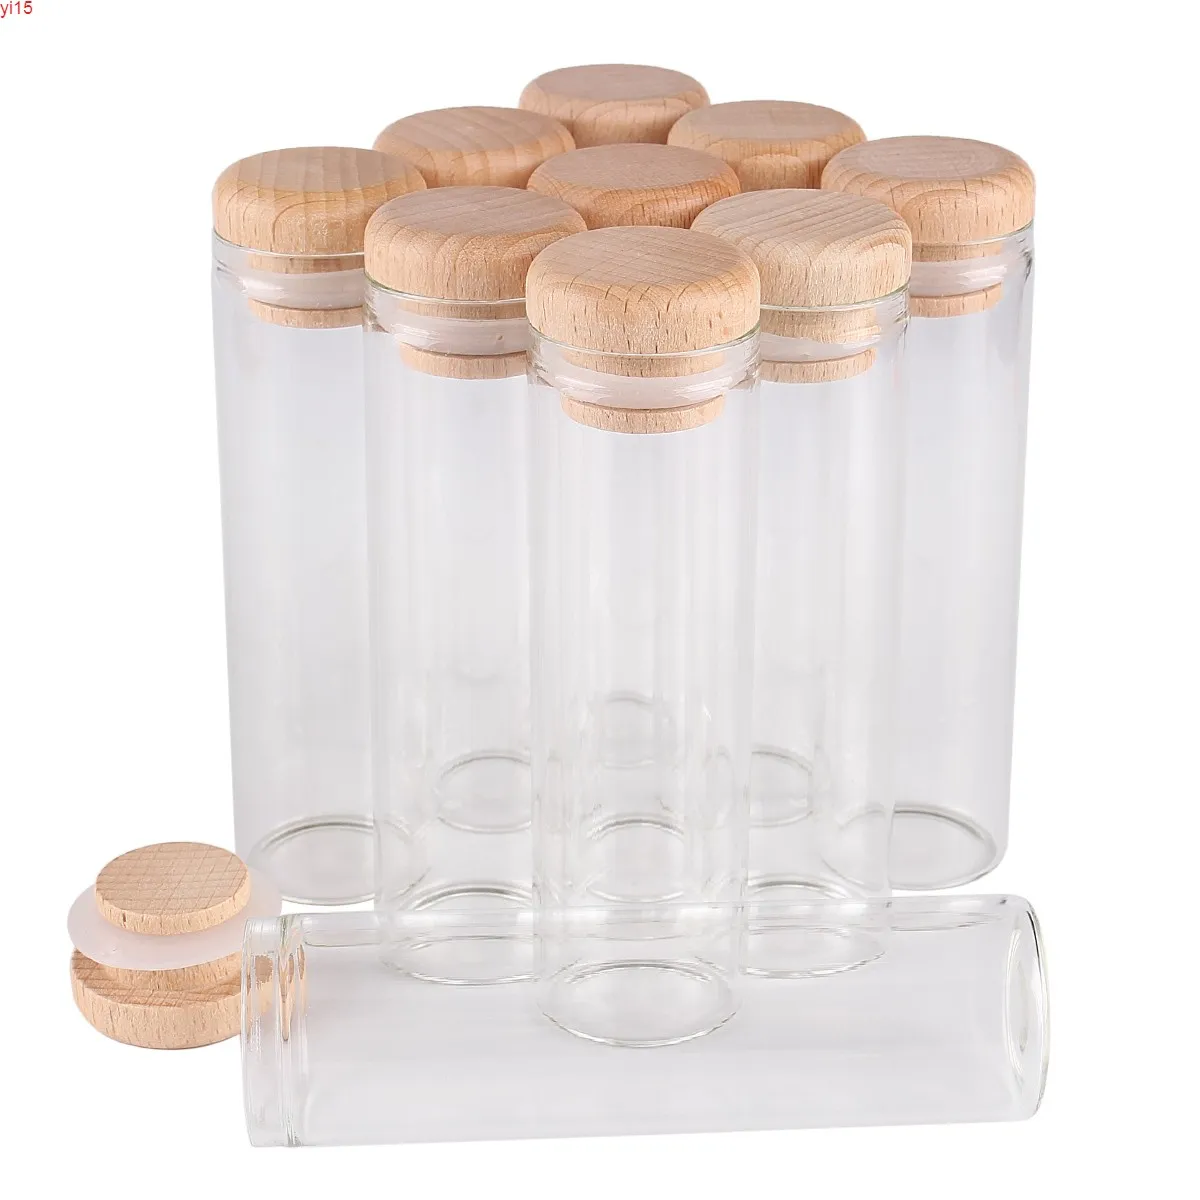 24 piezas 50 ml 30 * 100 mm Tubos de ensayo con tapas de madera Frascos de vidrio para especias Viales Wish Bolttes Wish Bottle Containergood qty